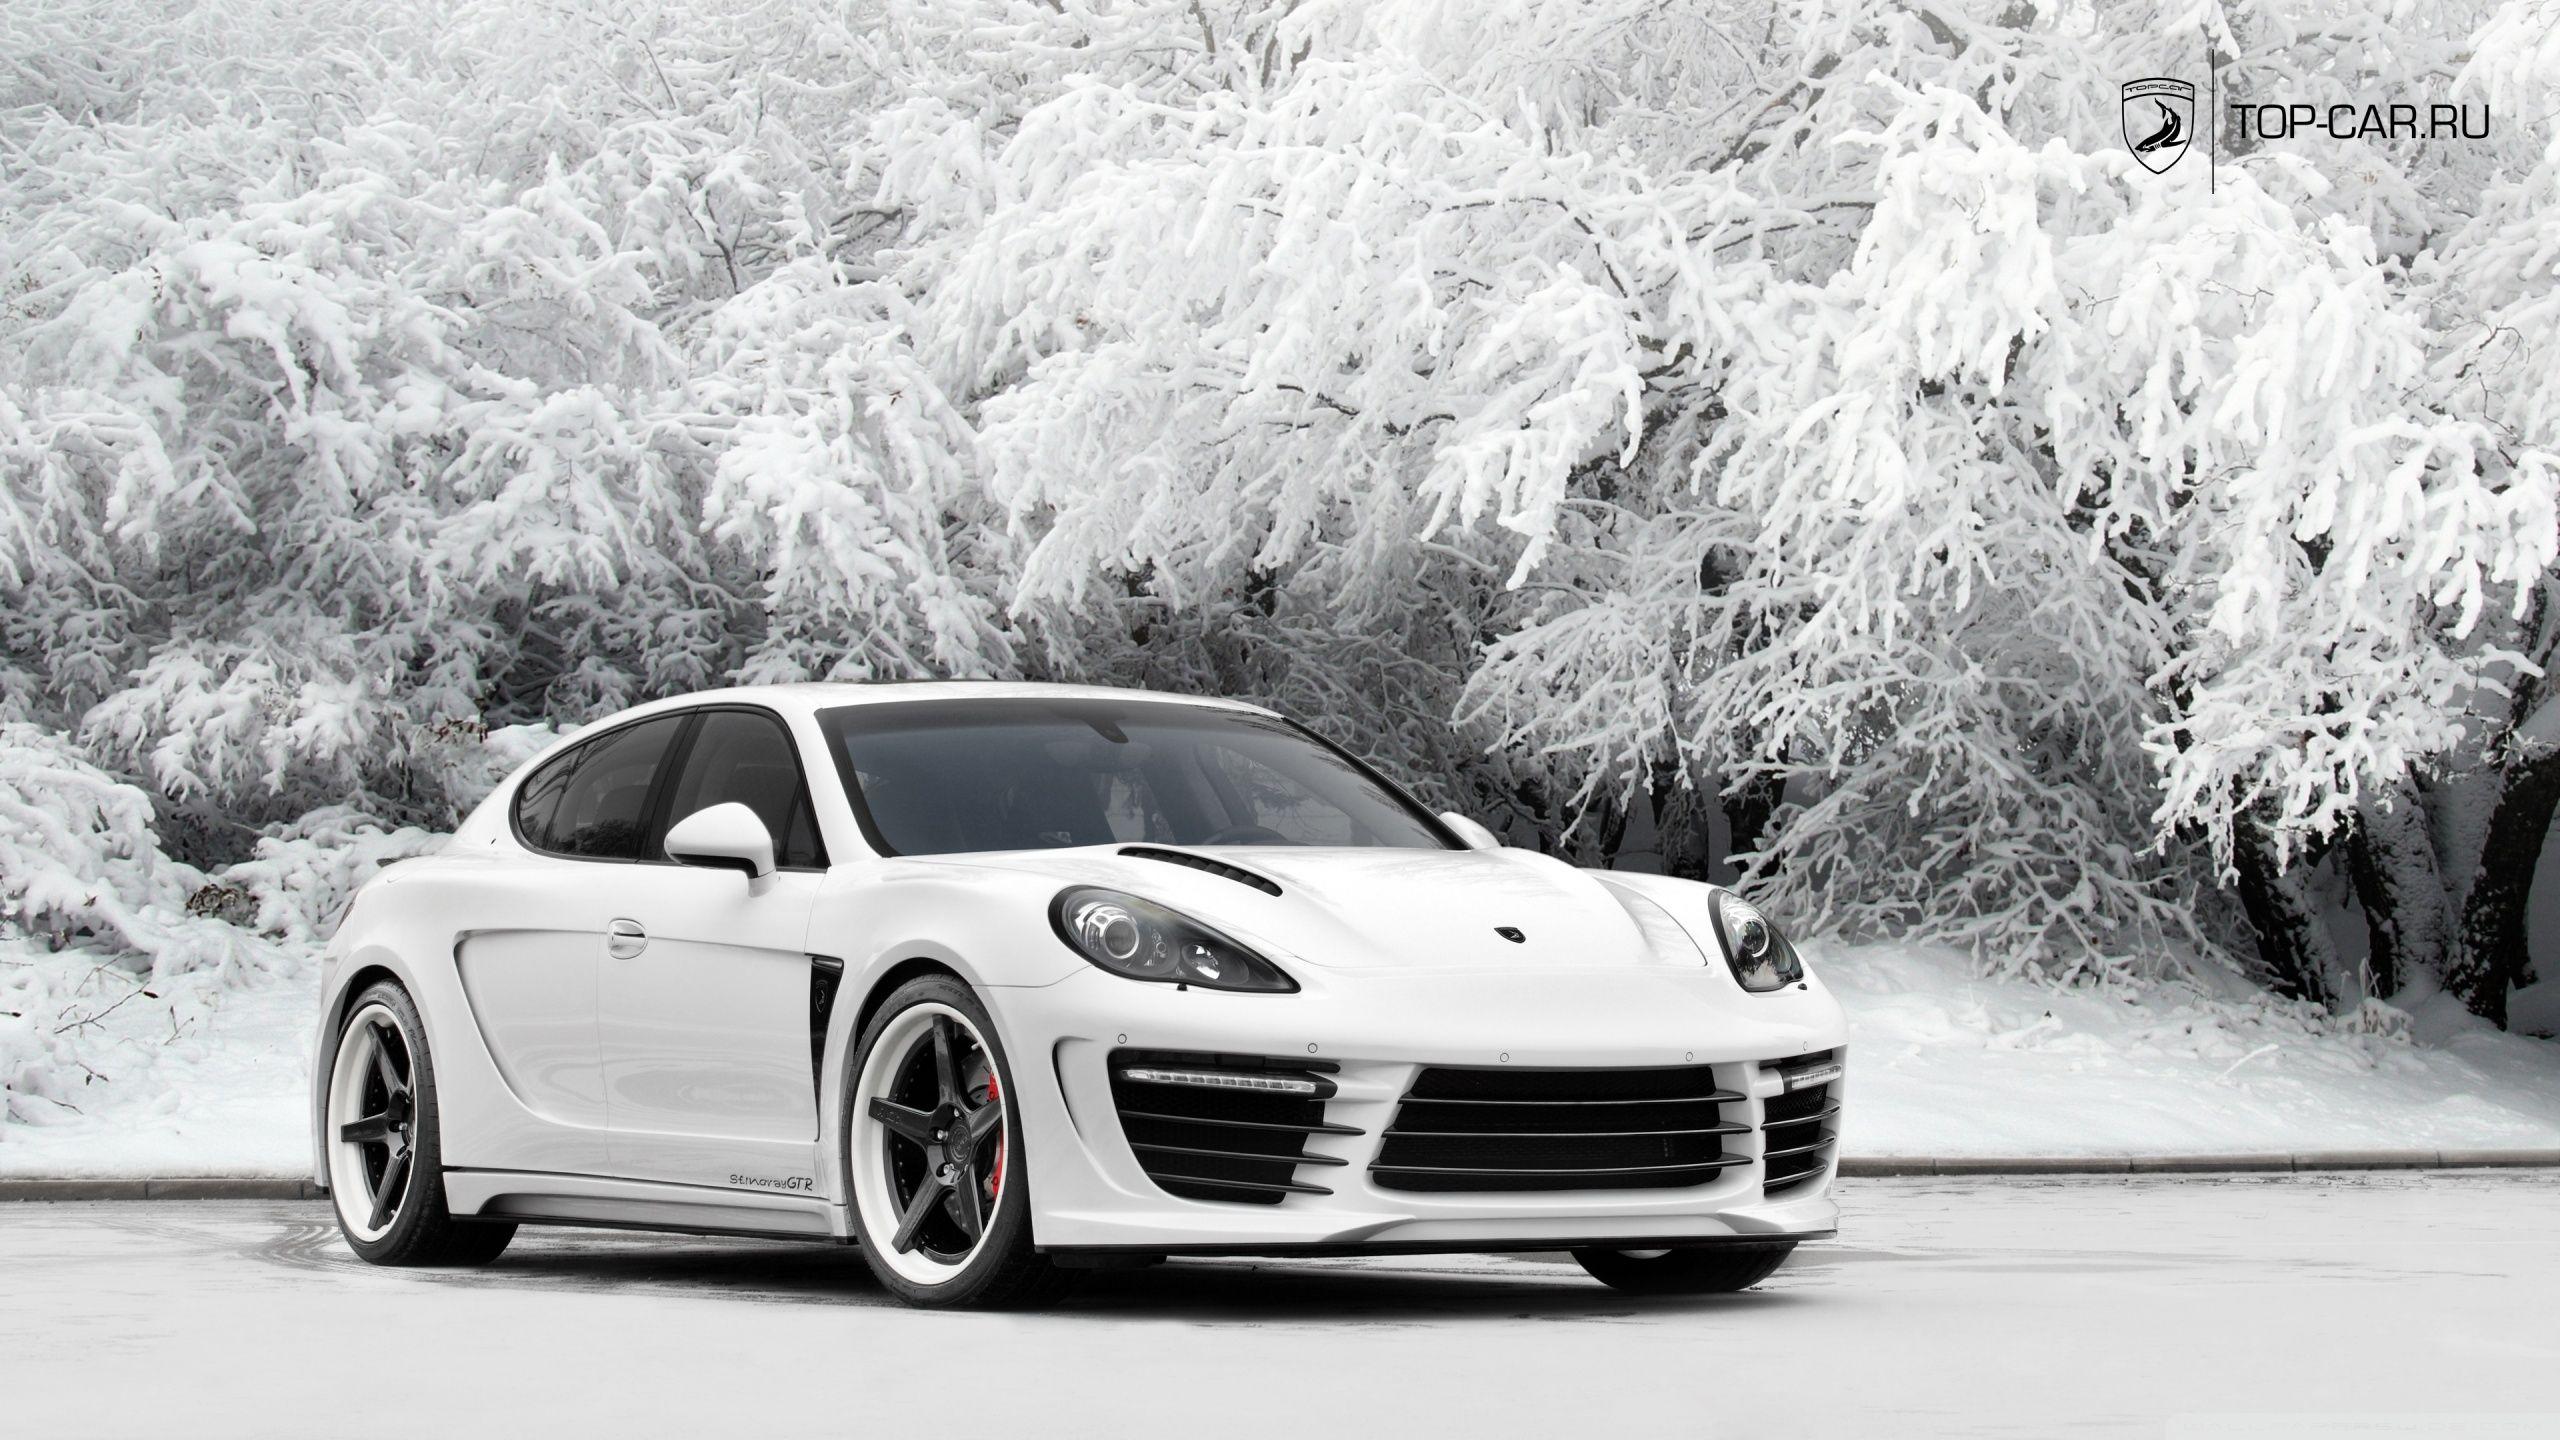 Porsche Panamera Stingray GTR HD desktop wallpaper, Widescreen